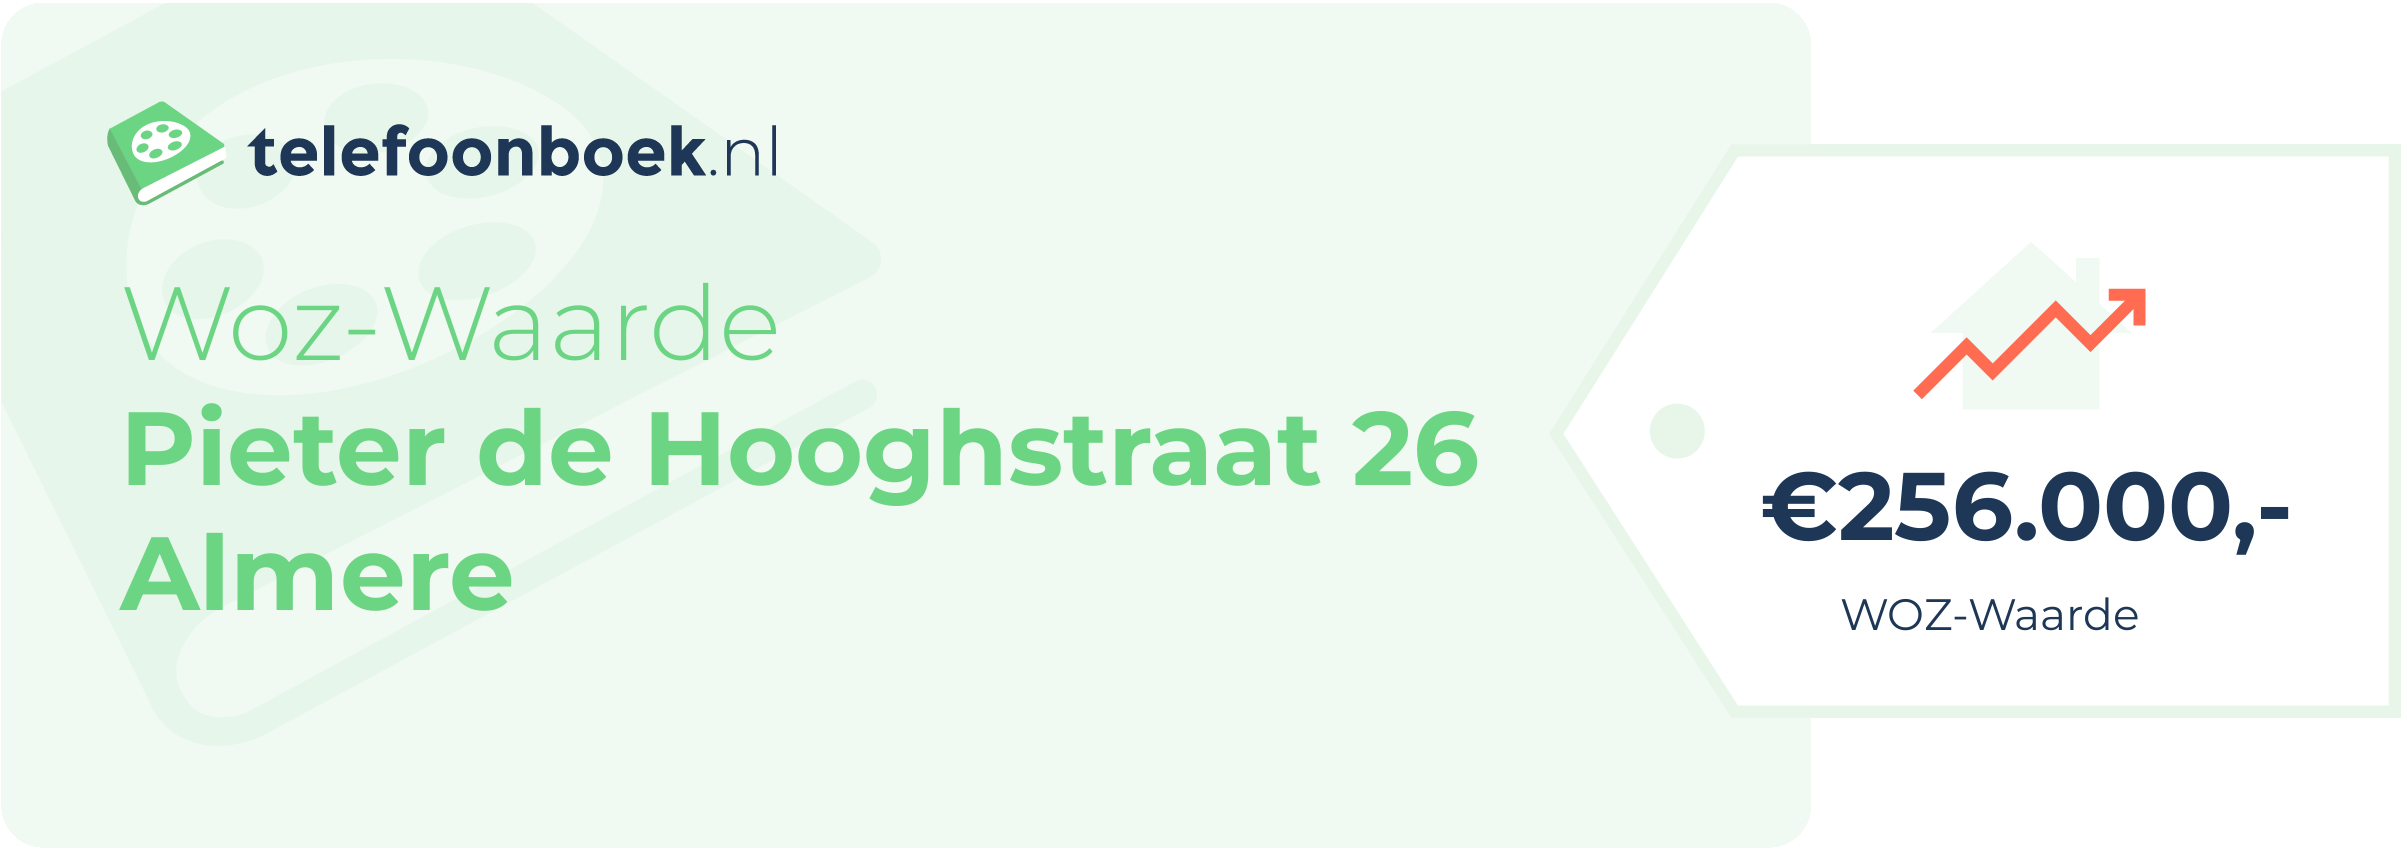 WOZ-waarde Pieter De Hooghstraat 26 Almere